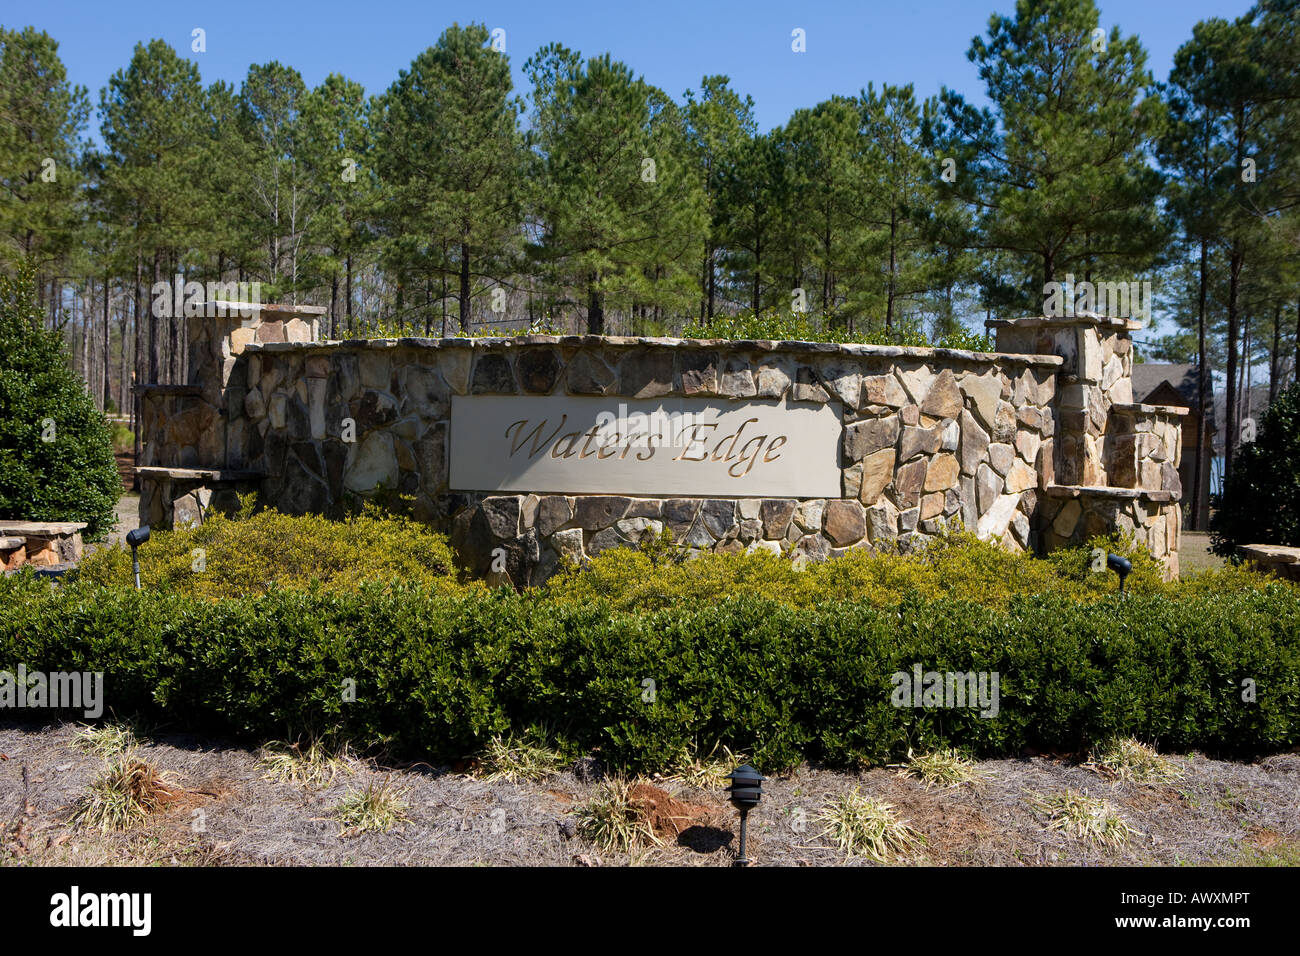 Waters Edge Nachbarschaft Zeichen See Greenwood Cross Hill South Carolina Vereinigte Staaten von Amerika Stockfoto